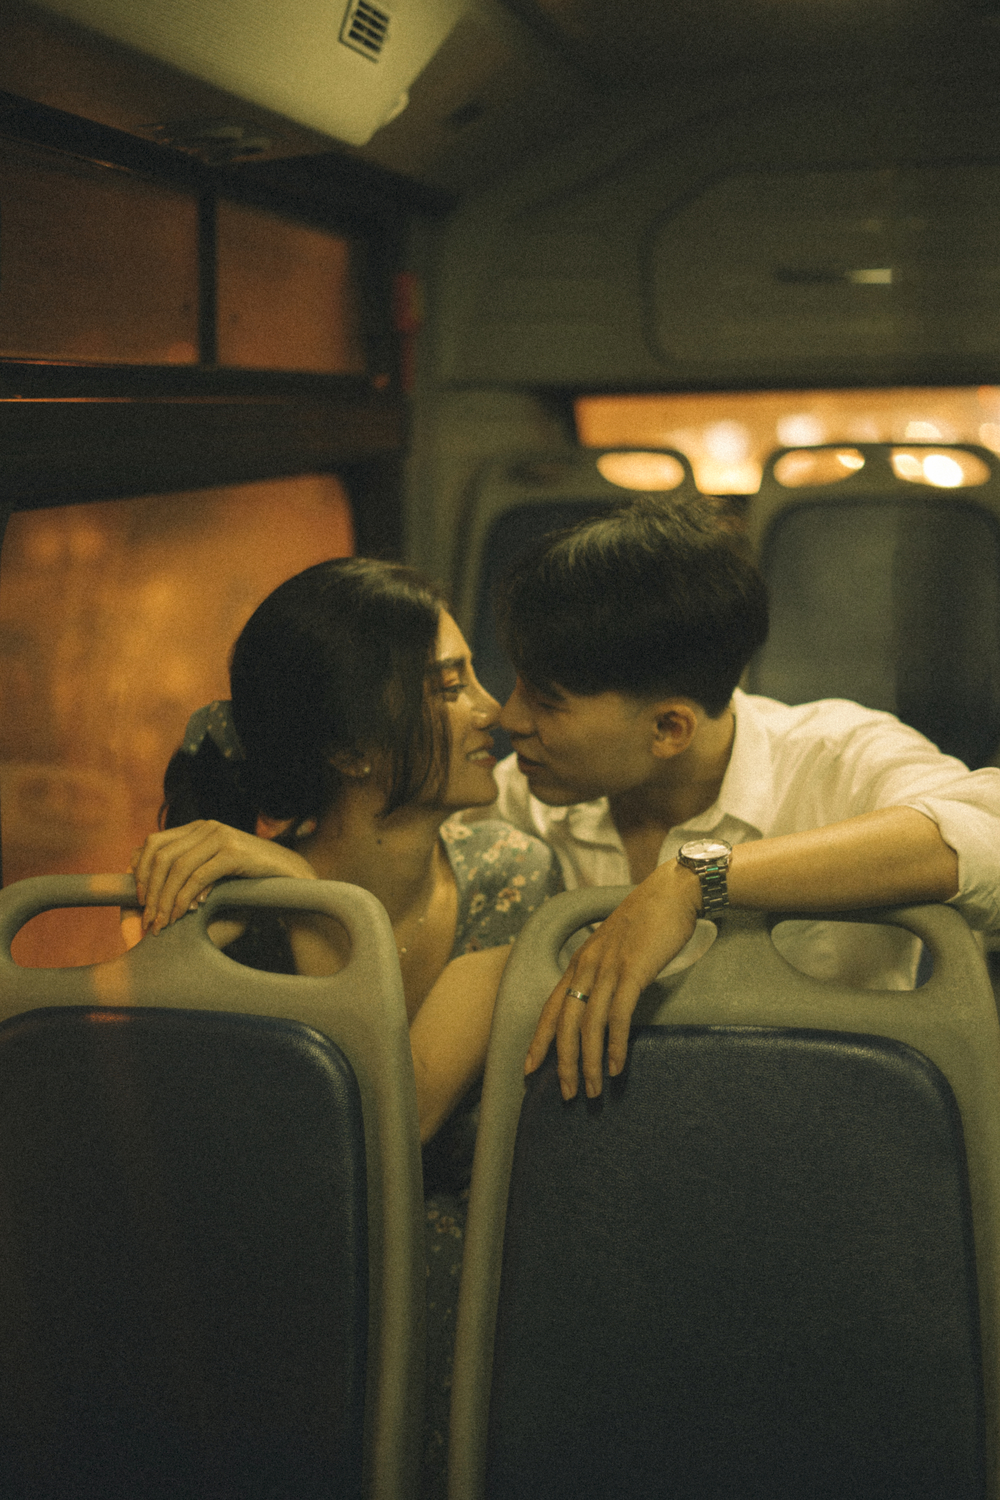 
Những khoảnh khắc đẹp đẽ trong tình yêu được ghi lại một cách nhẹ nhàng và nhiều cảm xúc - Ảnh: Thích Việt Hoàng